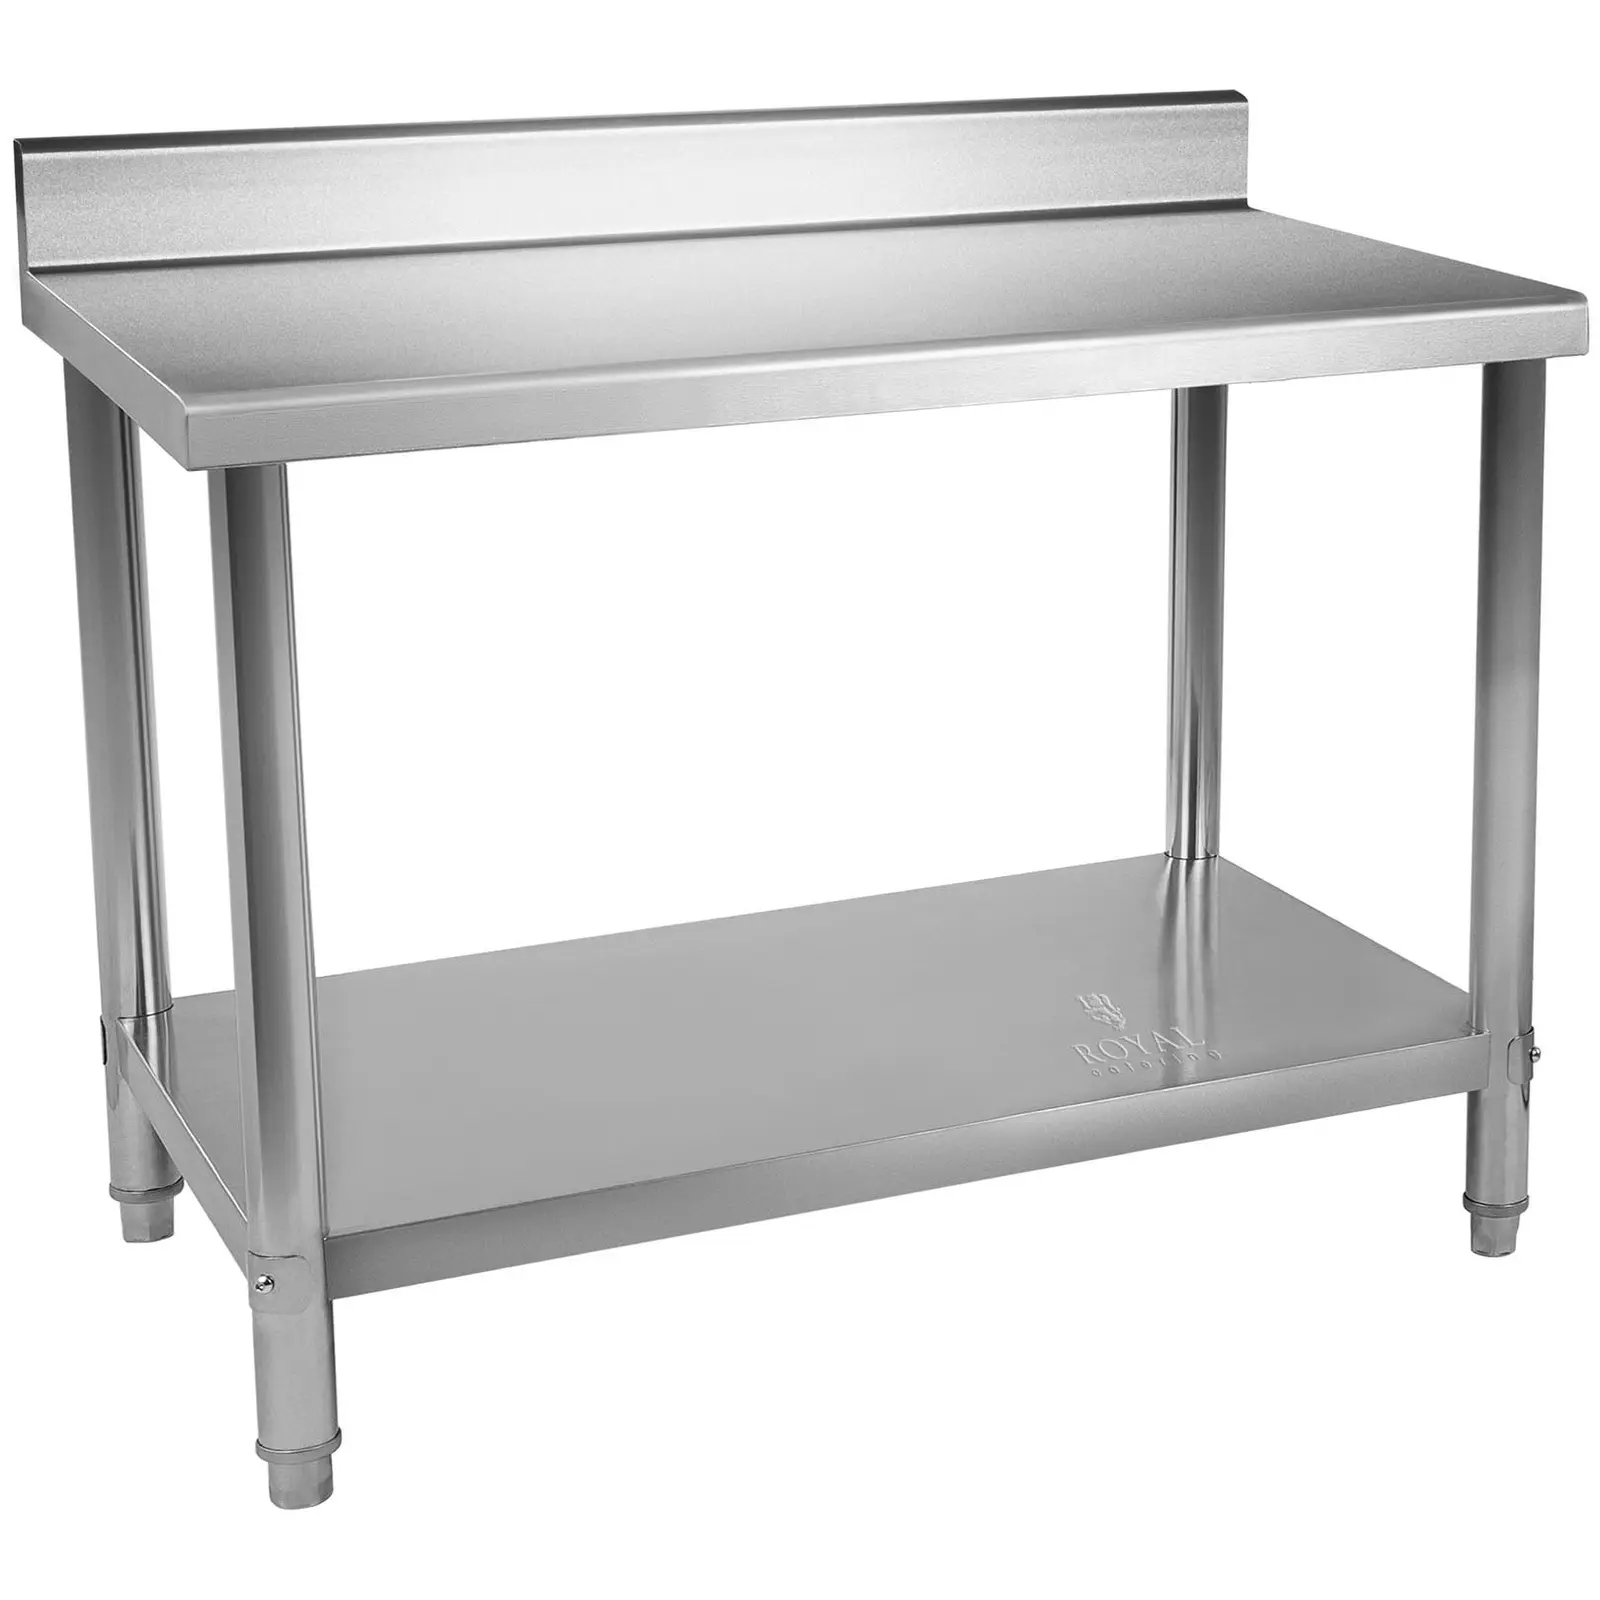 Pracovní stůl z ušlechtilé oceli - 120 x 60 cm - 110 kg - s lemem